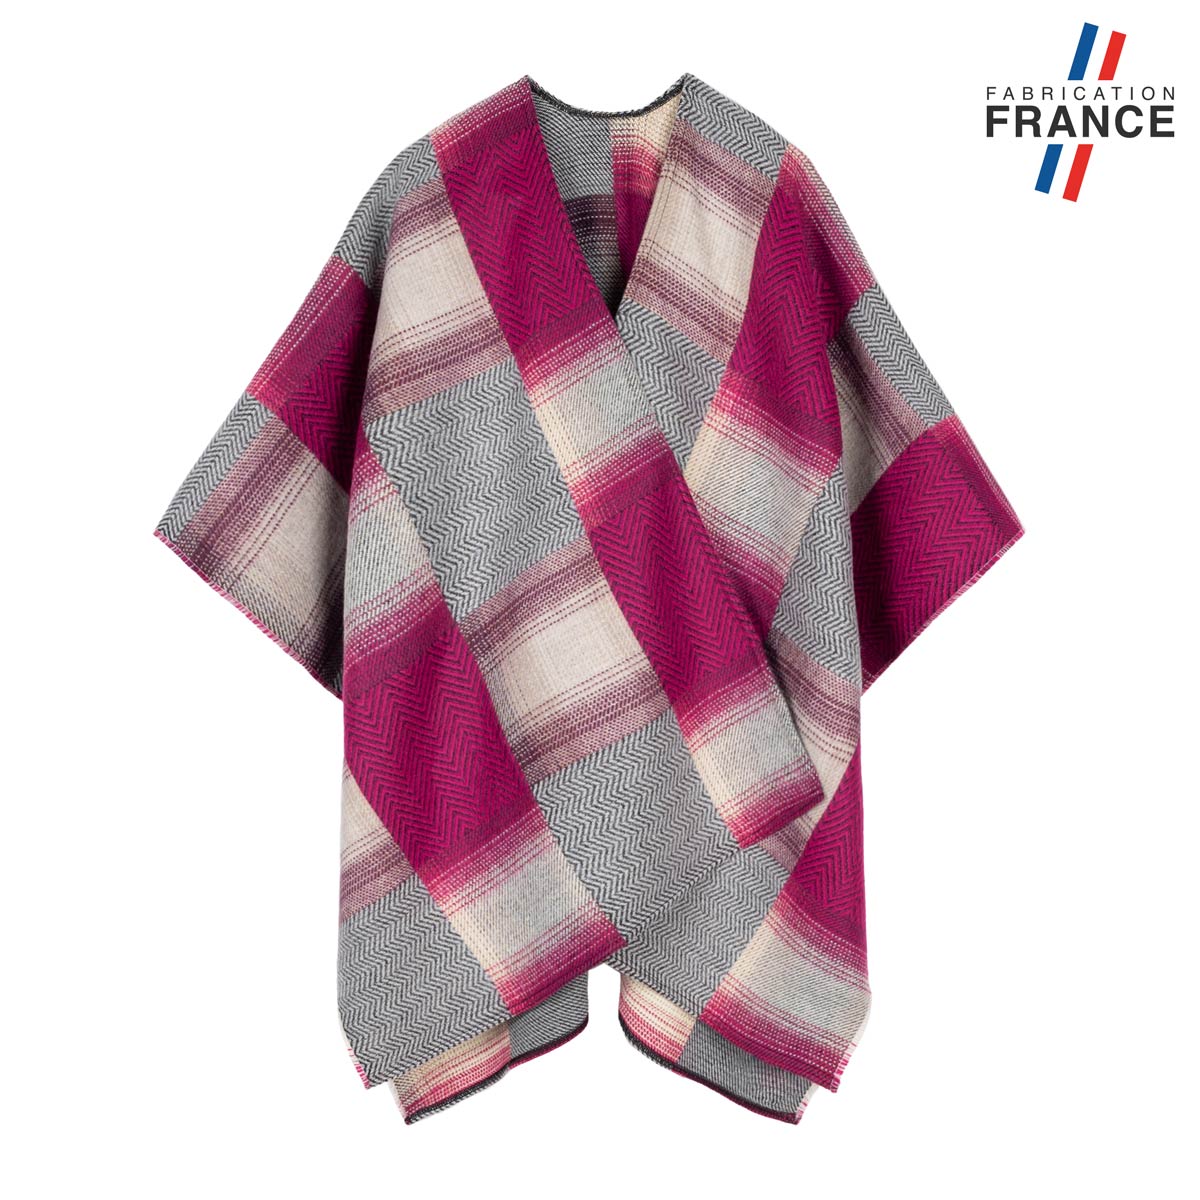 Poncho-femme-patchwork-rose-gris-fabrique-en-France--AT-07022_F12-1FR